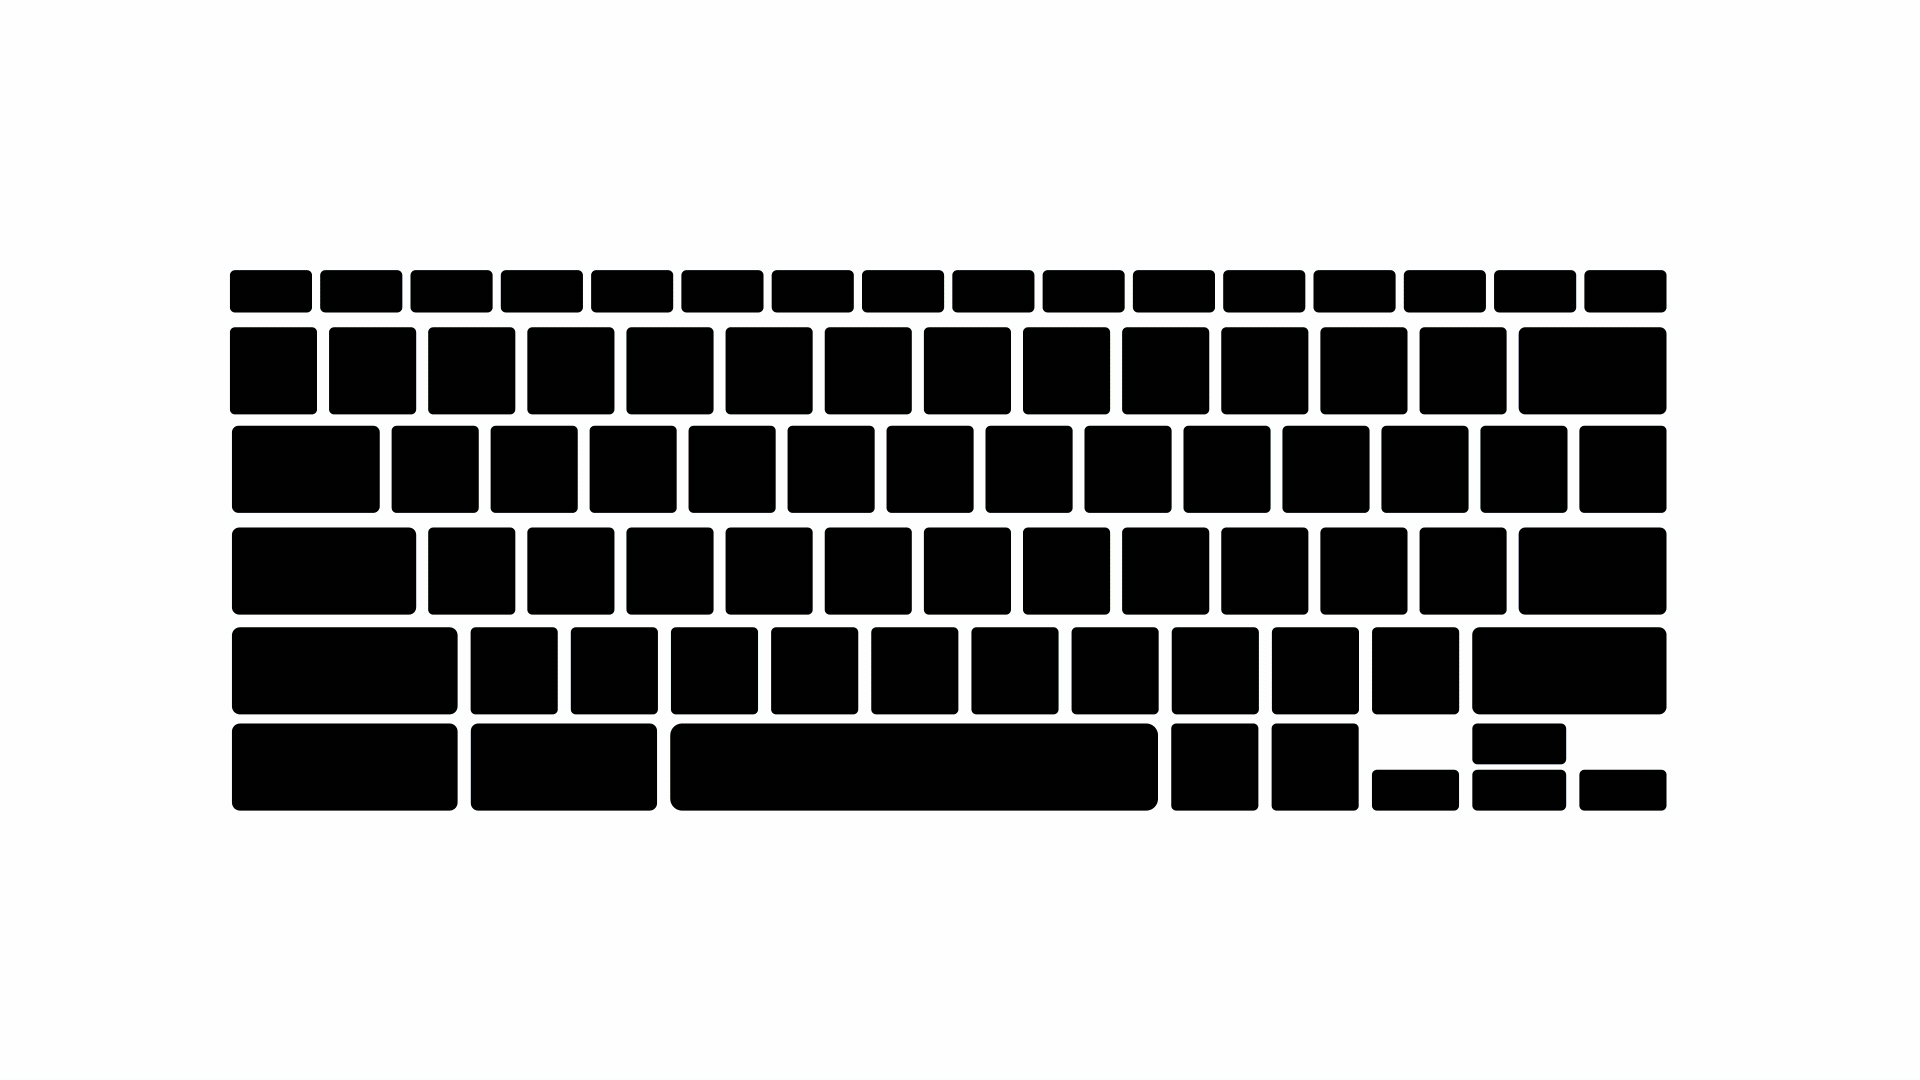 Ilustração da luz de fundo do teclado